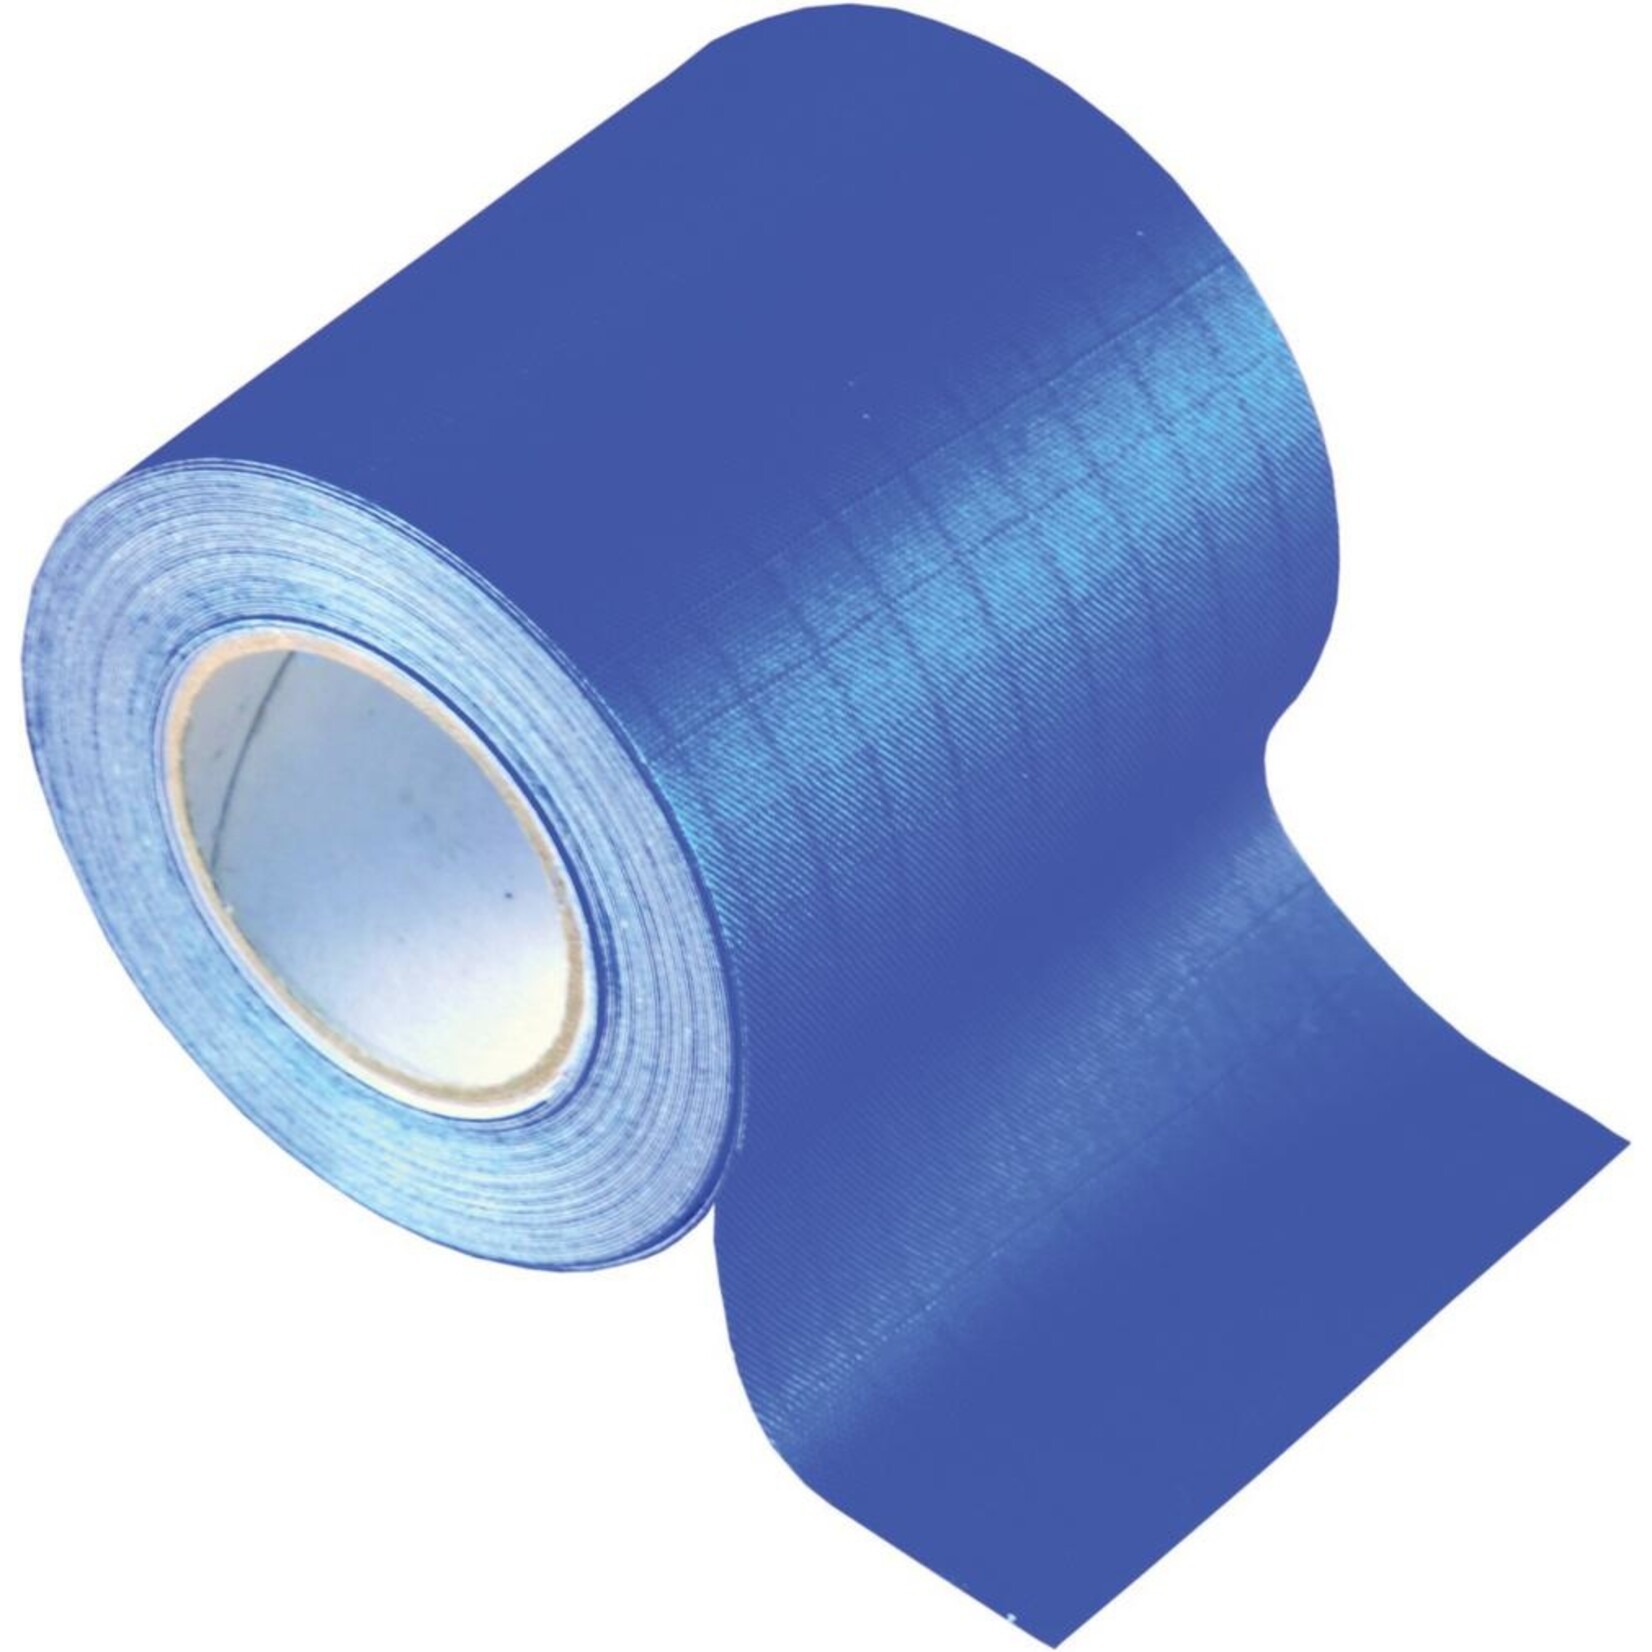 U-Rope Spinnaker repair tape 50mm x 4.5m. blue